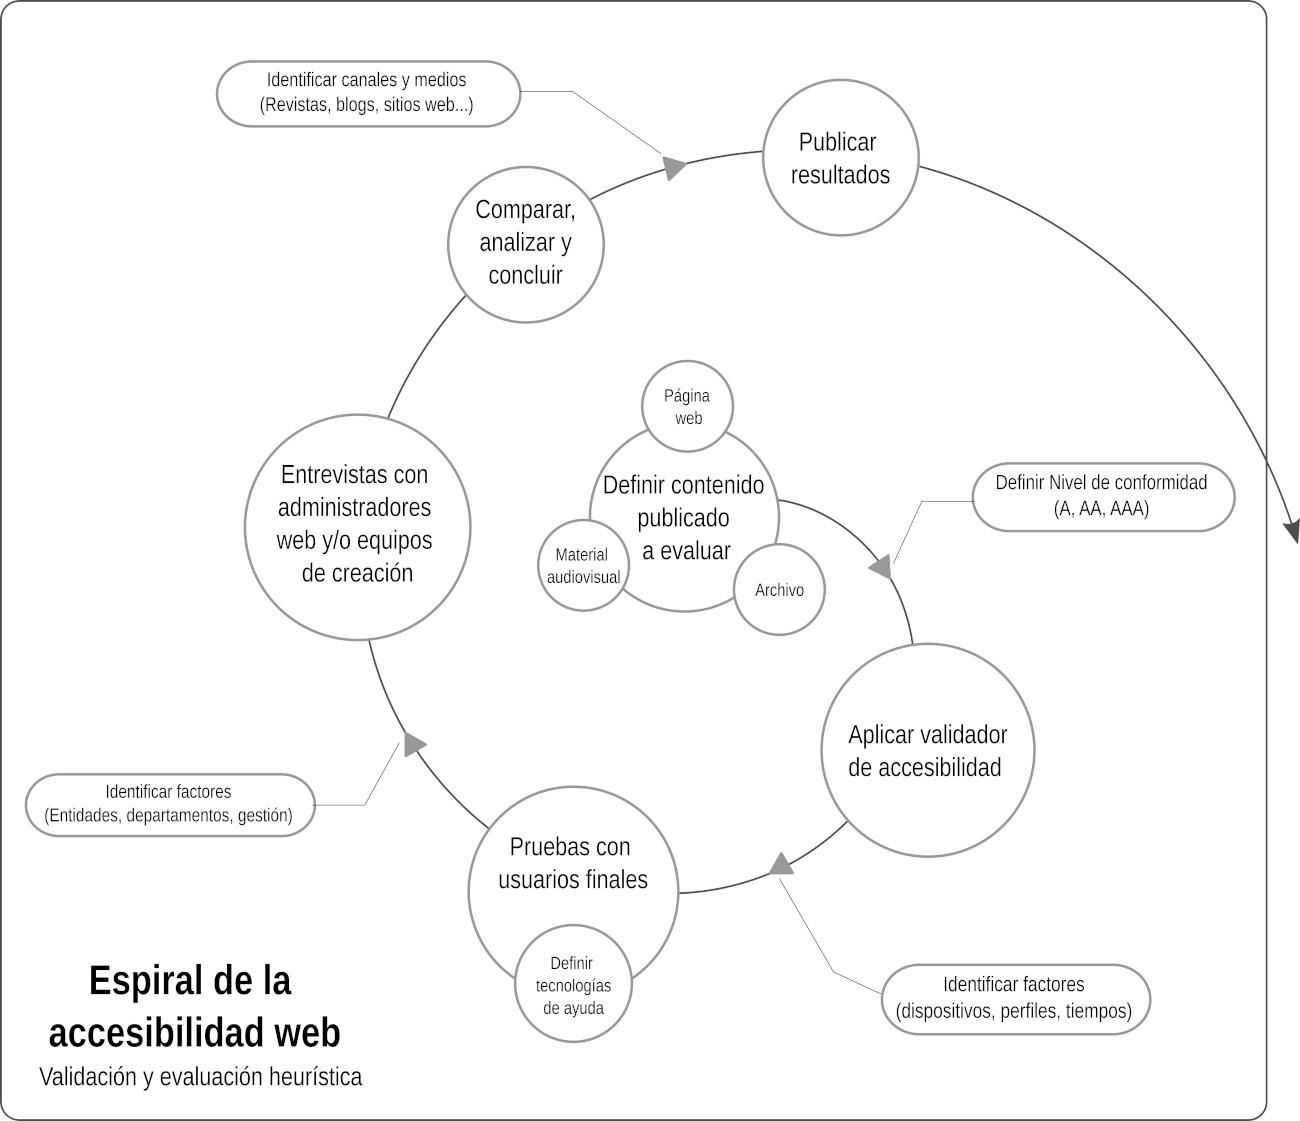 Espiral de la accesibilidad. Es una gráfico que muestra las etapas de evaluación en una prueba de accesibilidad web